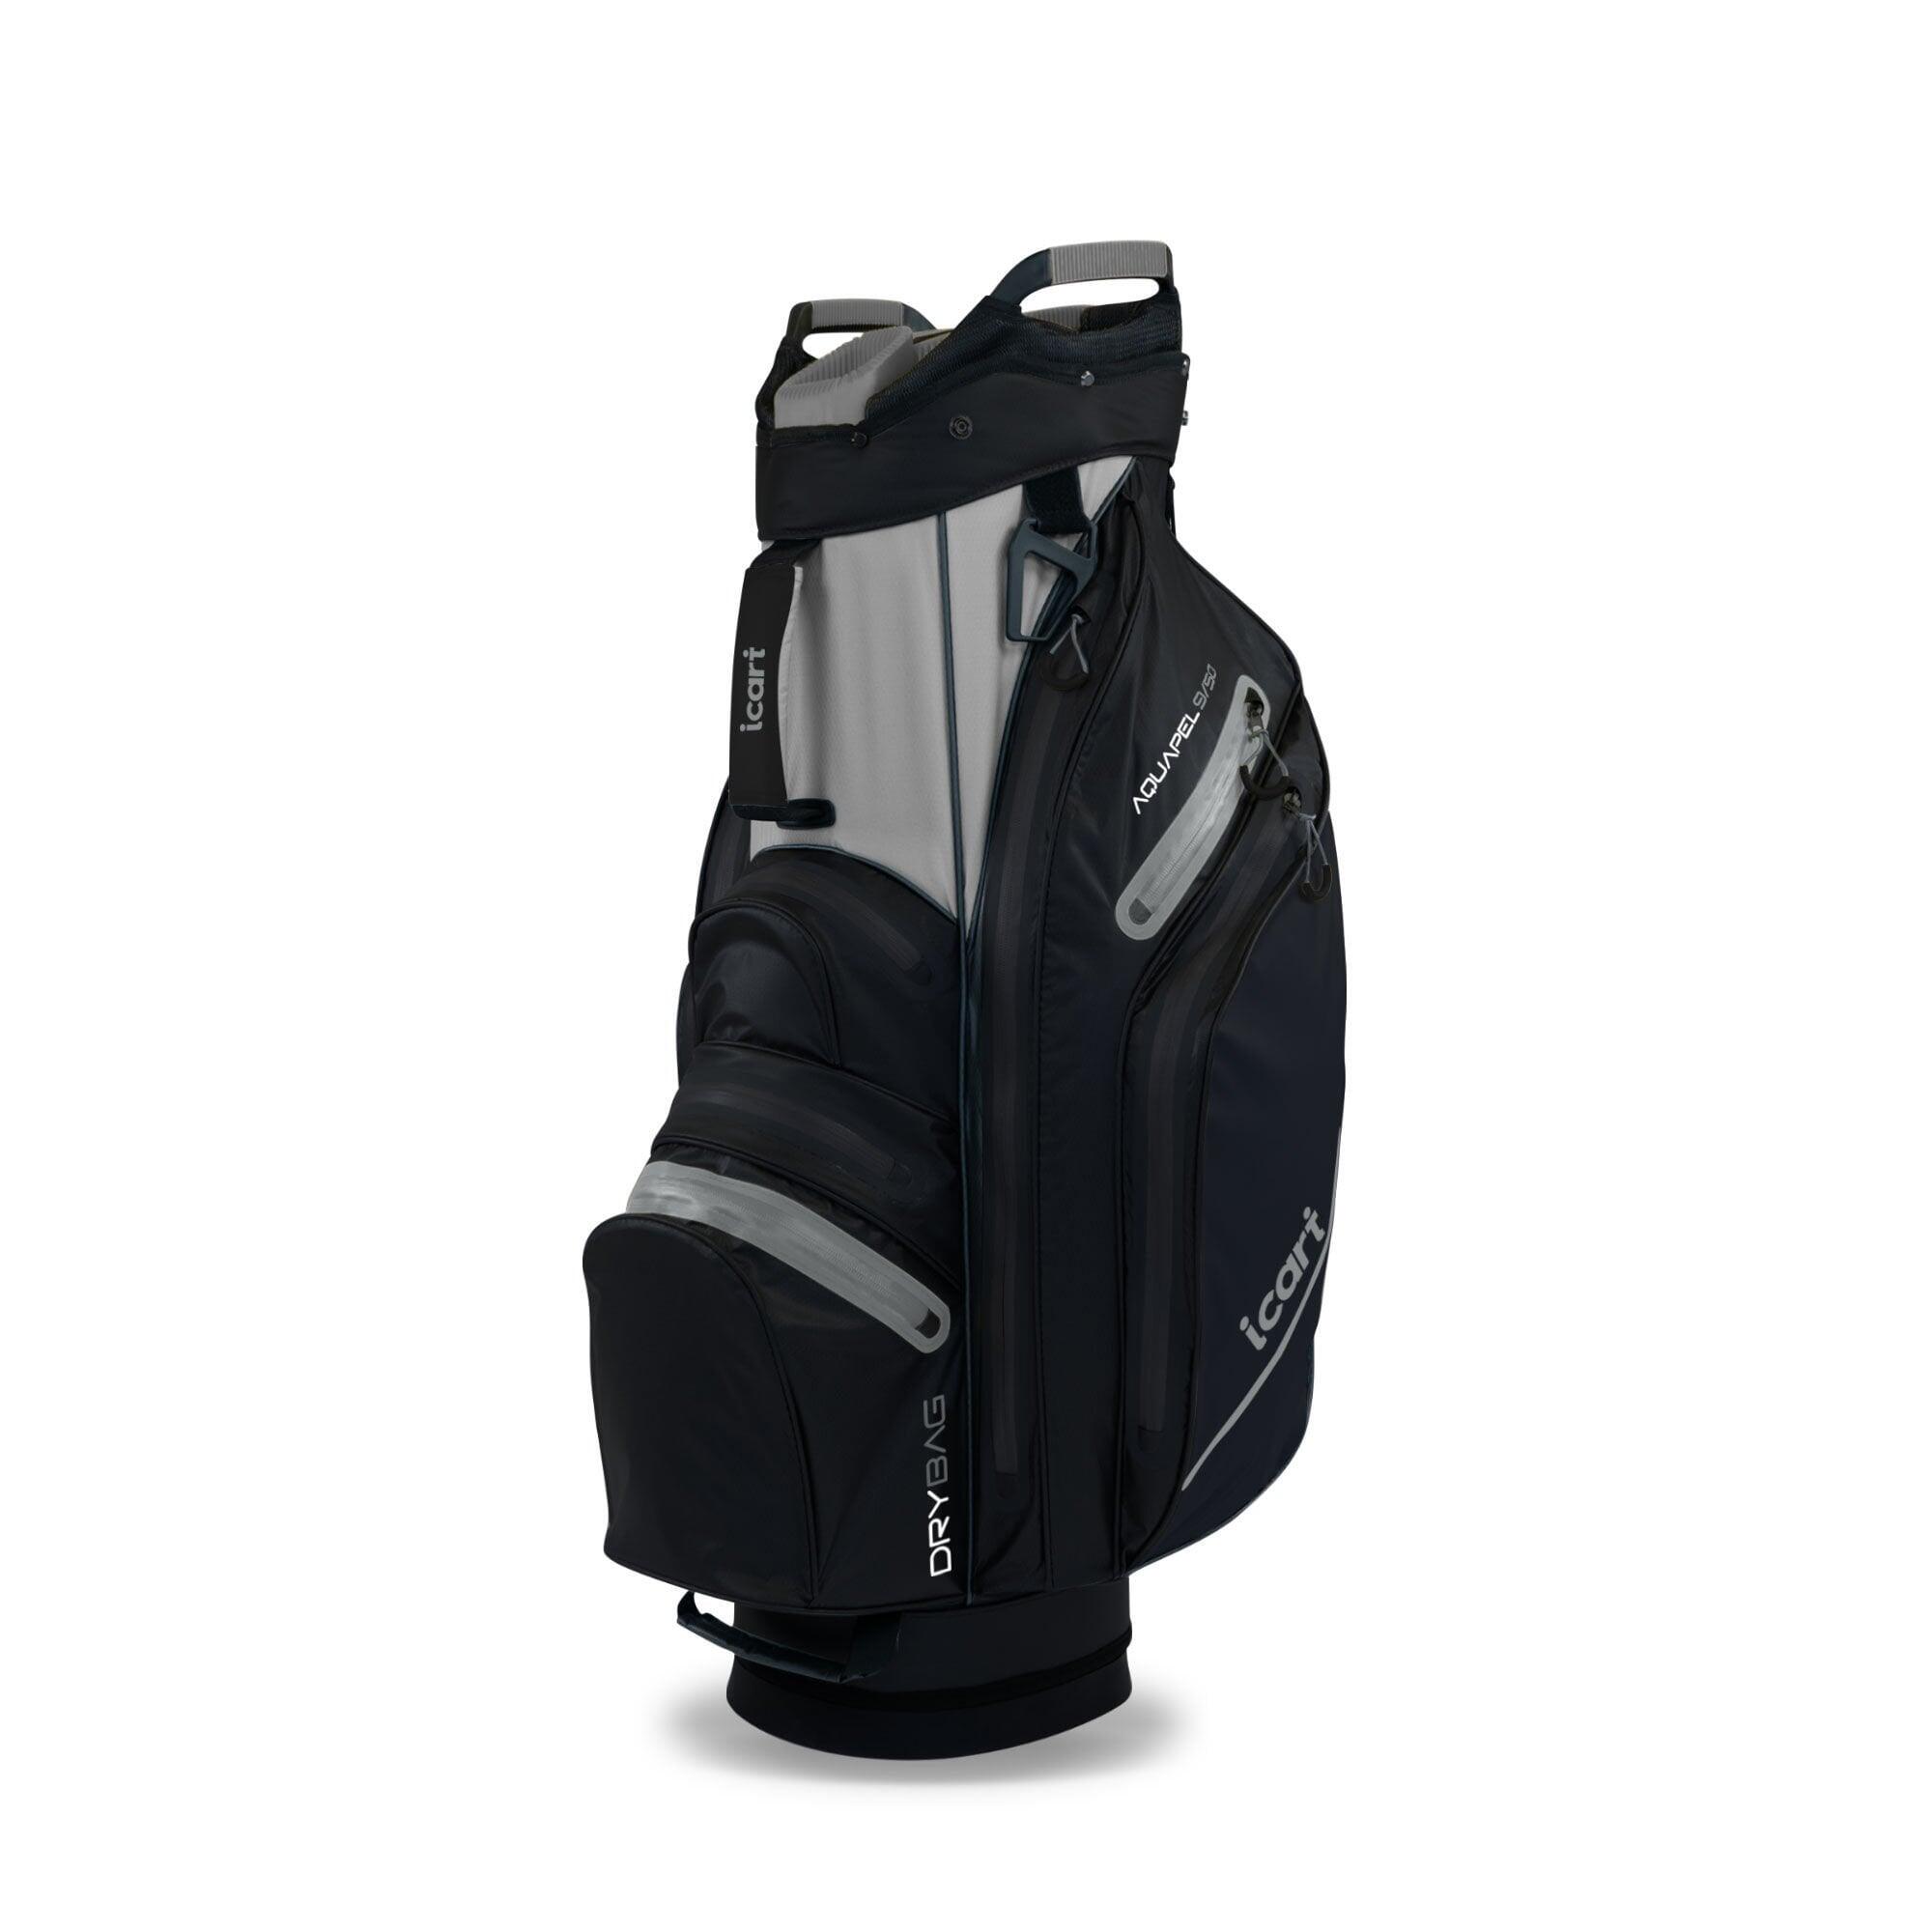 iCart Aquapel 9/50 Cart Bag Black/Grey 1/3